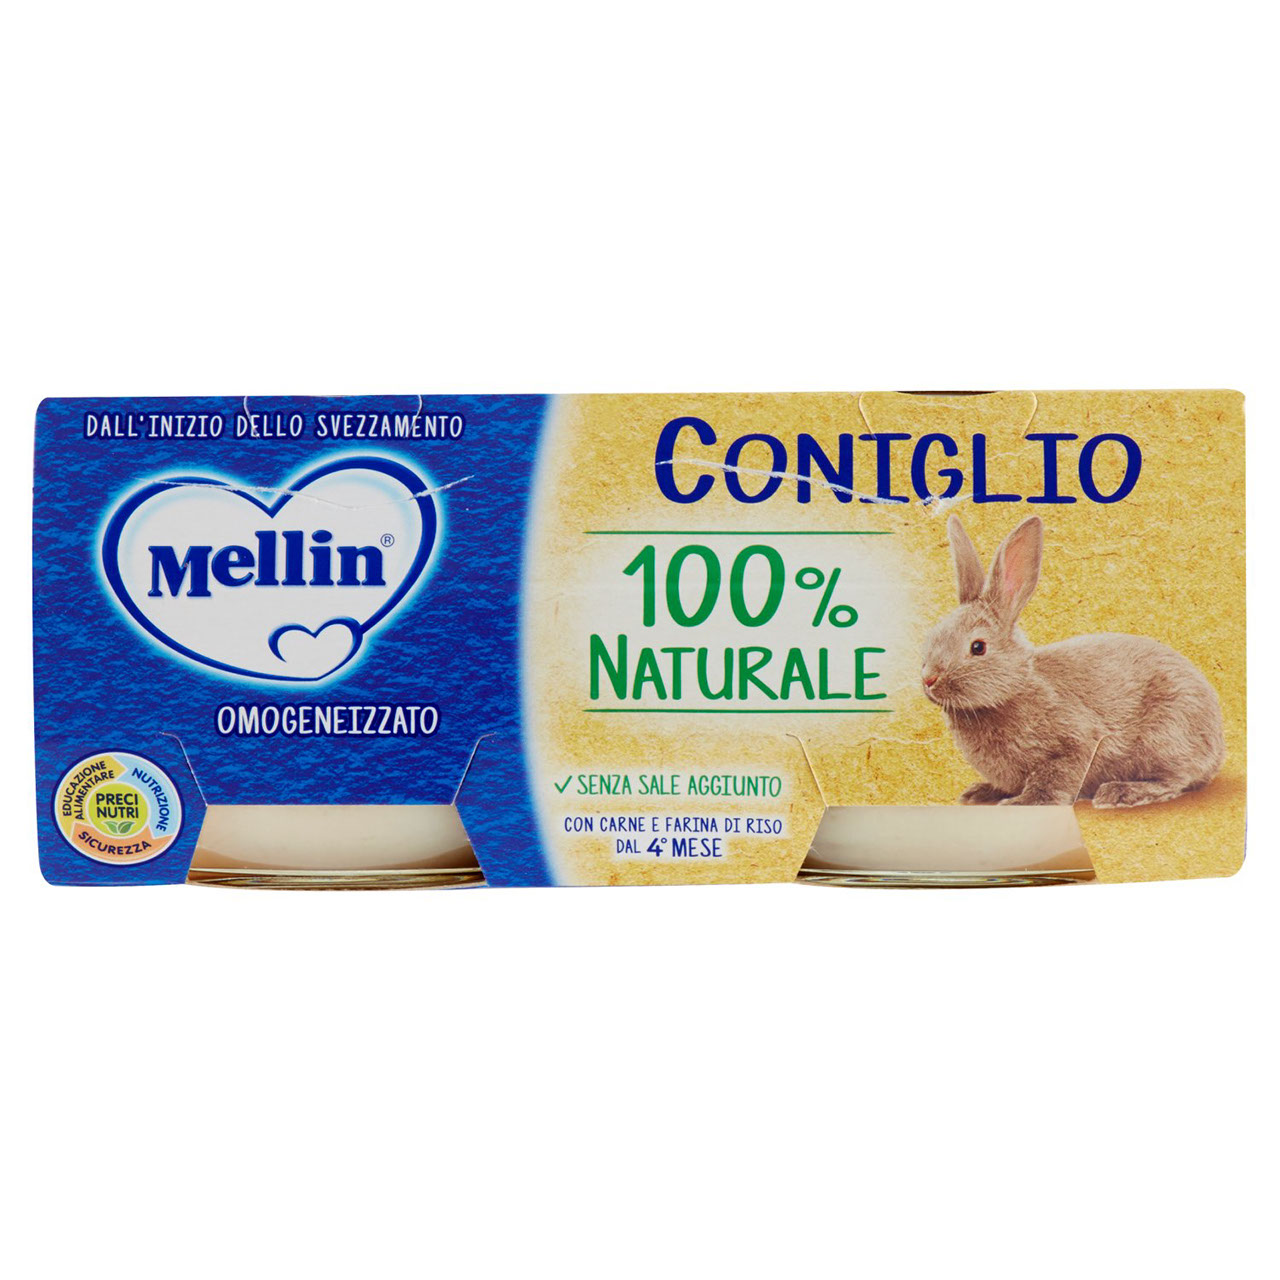 Mellin Coniglio 100% Naturale Omogeneizzato 2 x 80 g